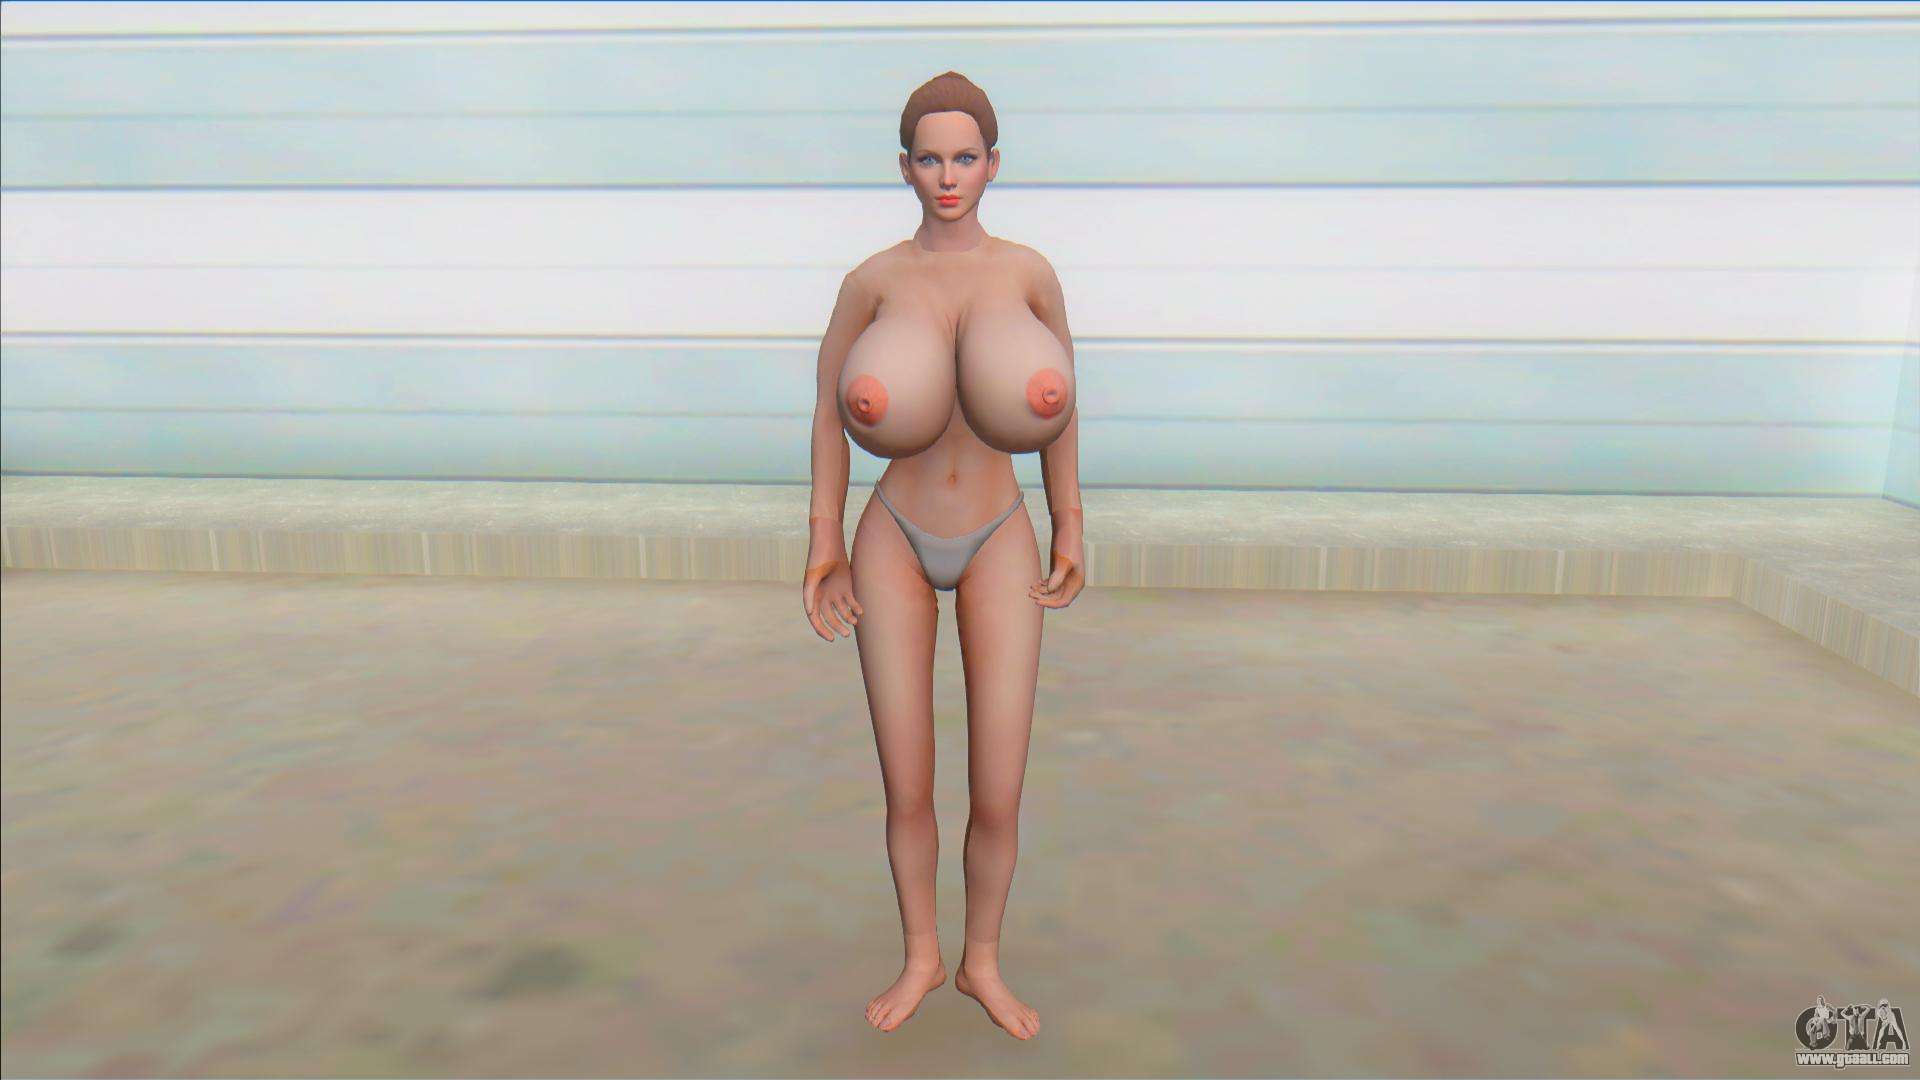 Xbox Boobs - Helena Big Boobs Nude Mod for GTA San Andreas